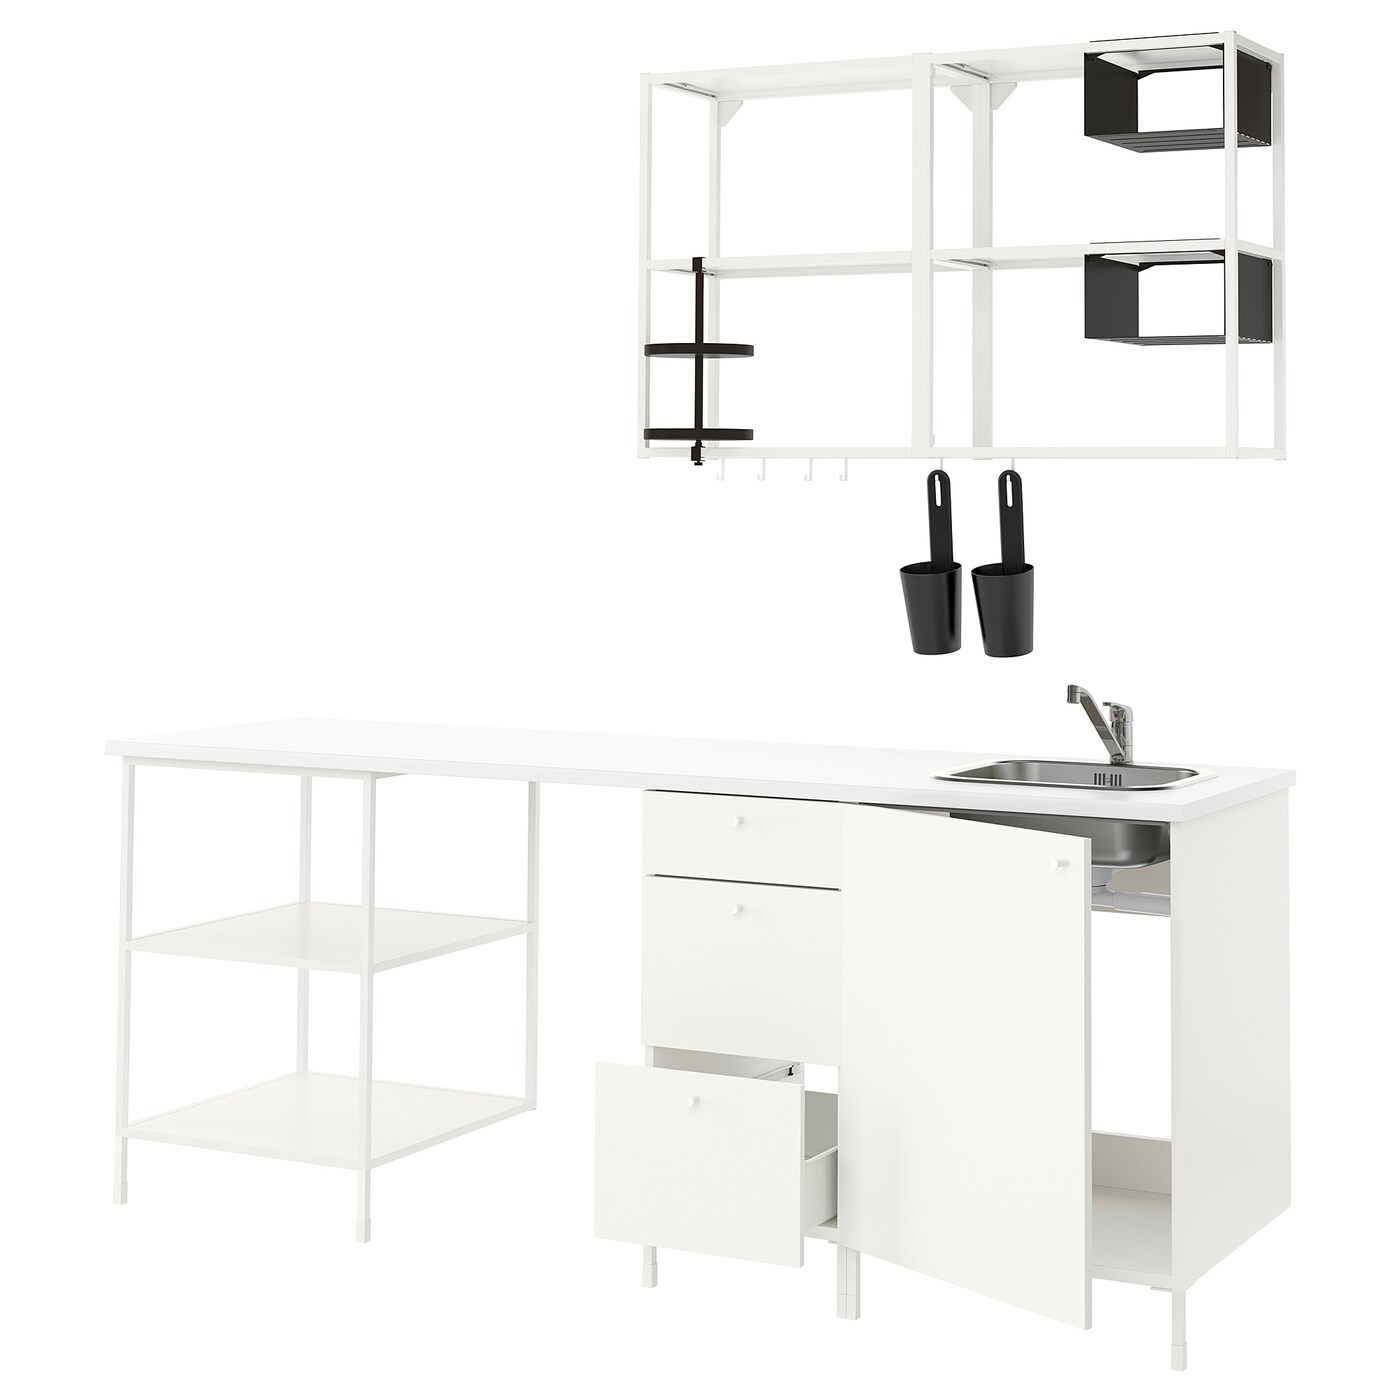 Кухня -  ENHET  IKEA/ ЭНХЕТ ИКЕА, 223х222 см, белый